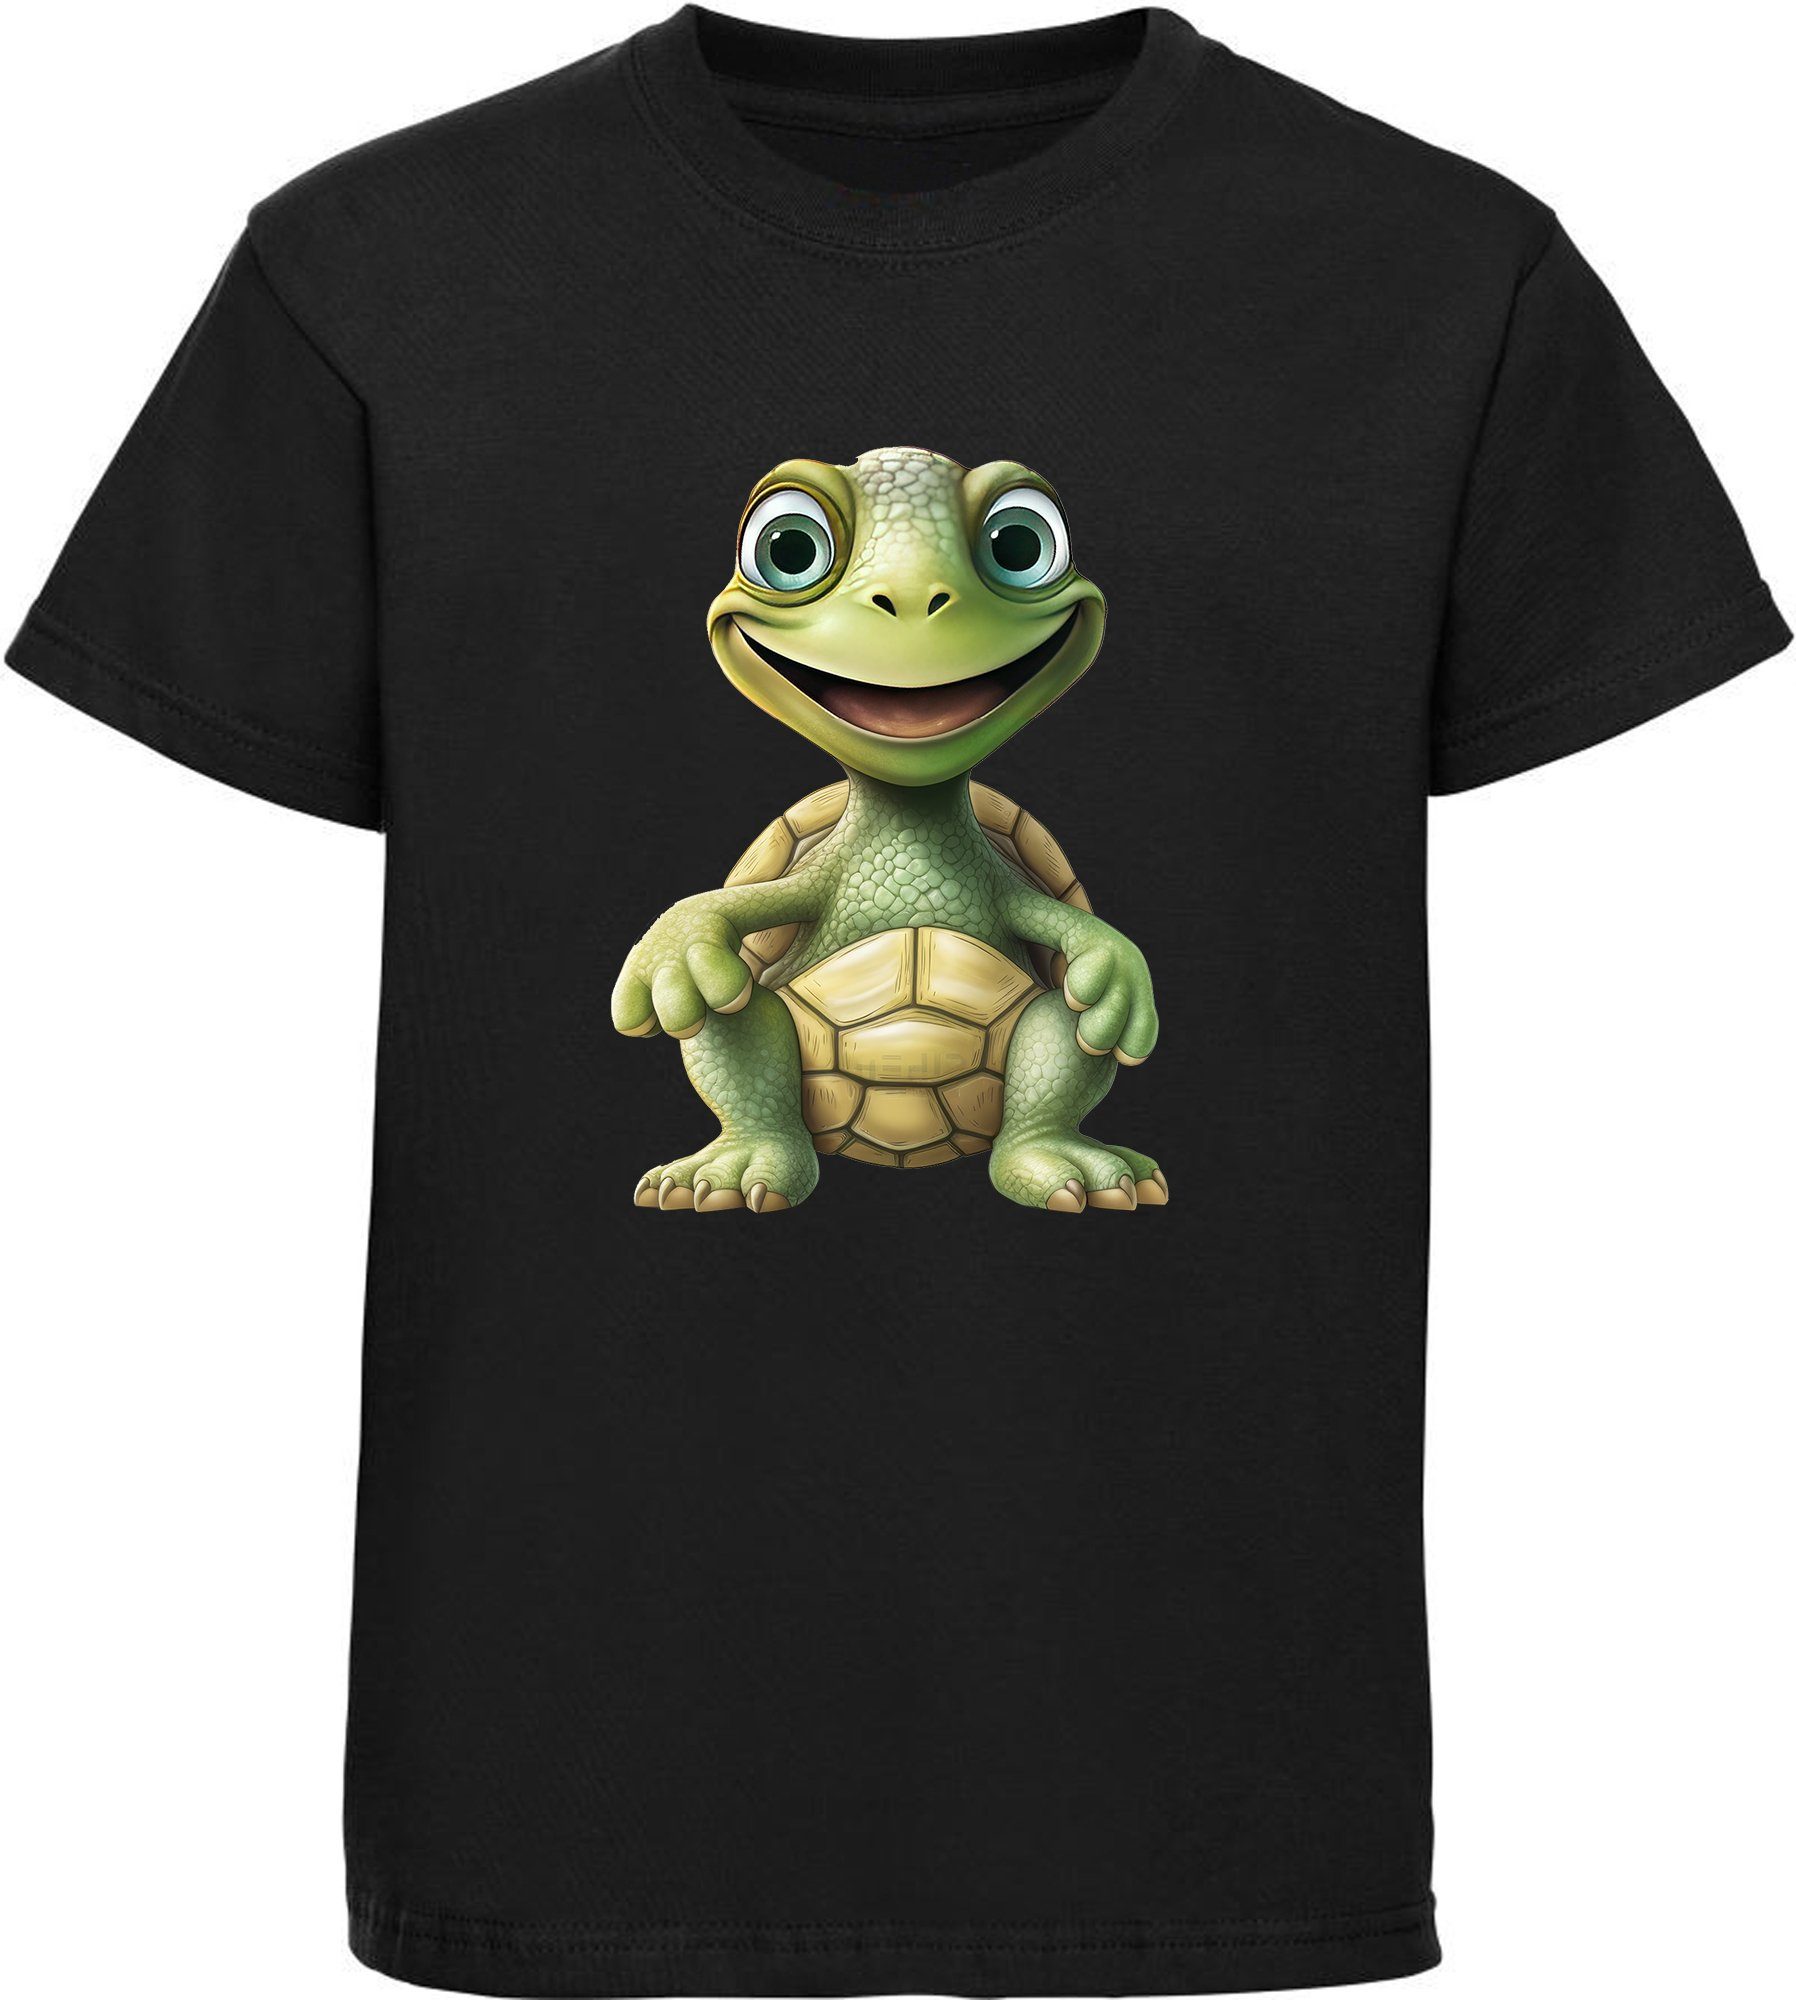 MyDesign24 T-Shirt Kinder Wildtier Print Shirt bedruckt - Baby Schildkröte Baumwollshirt mit Aufdruck, i279 schwarz